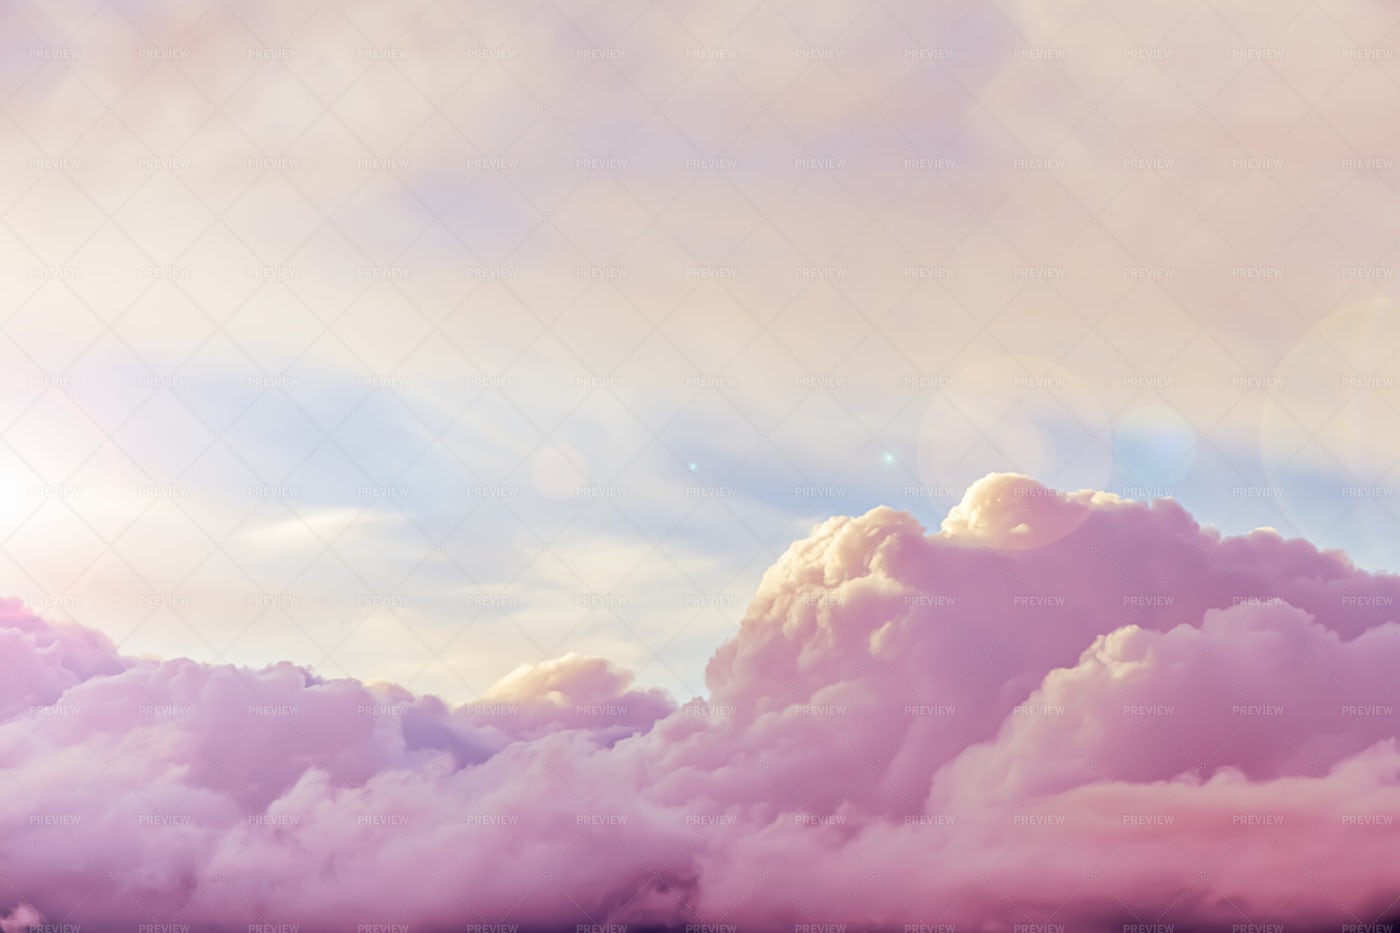 Beautiful Pink Clouds At Sunset: Stock Photos